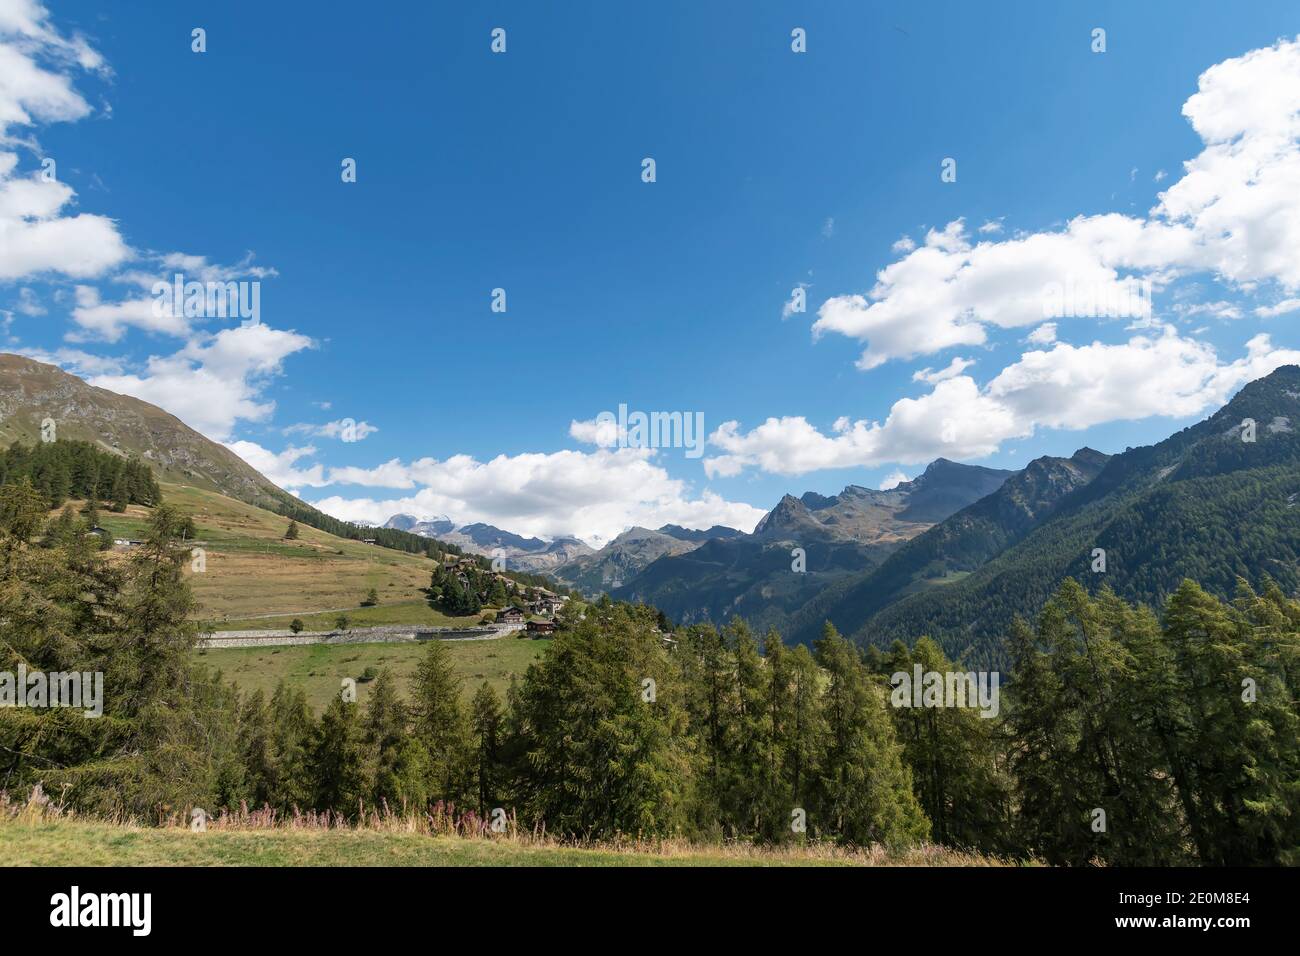 La chaîne de Monte Rosa vue d'Antagnod, Val d'Ayas. Val d'Aoste, Italie Banque D'Images